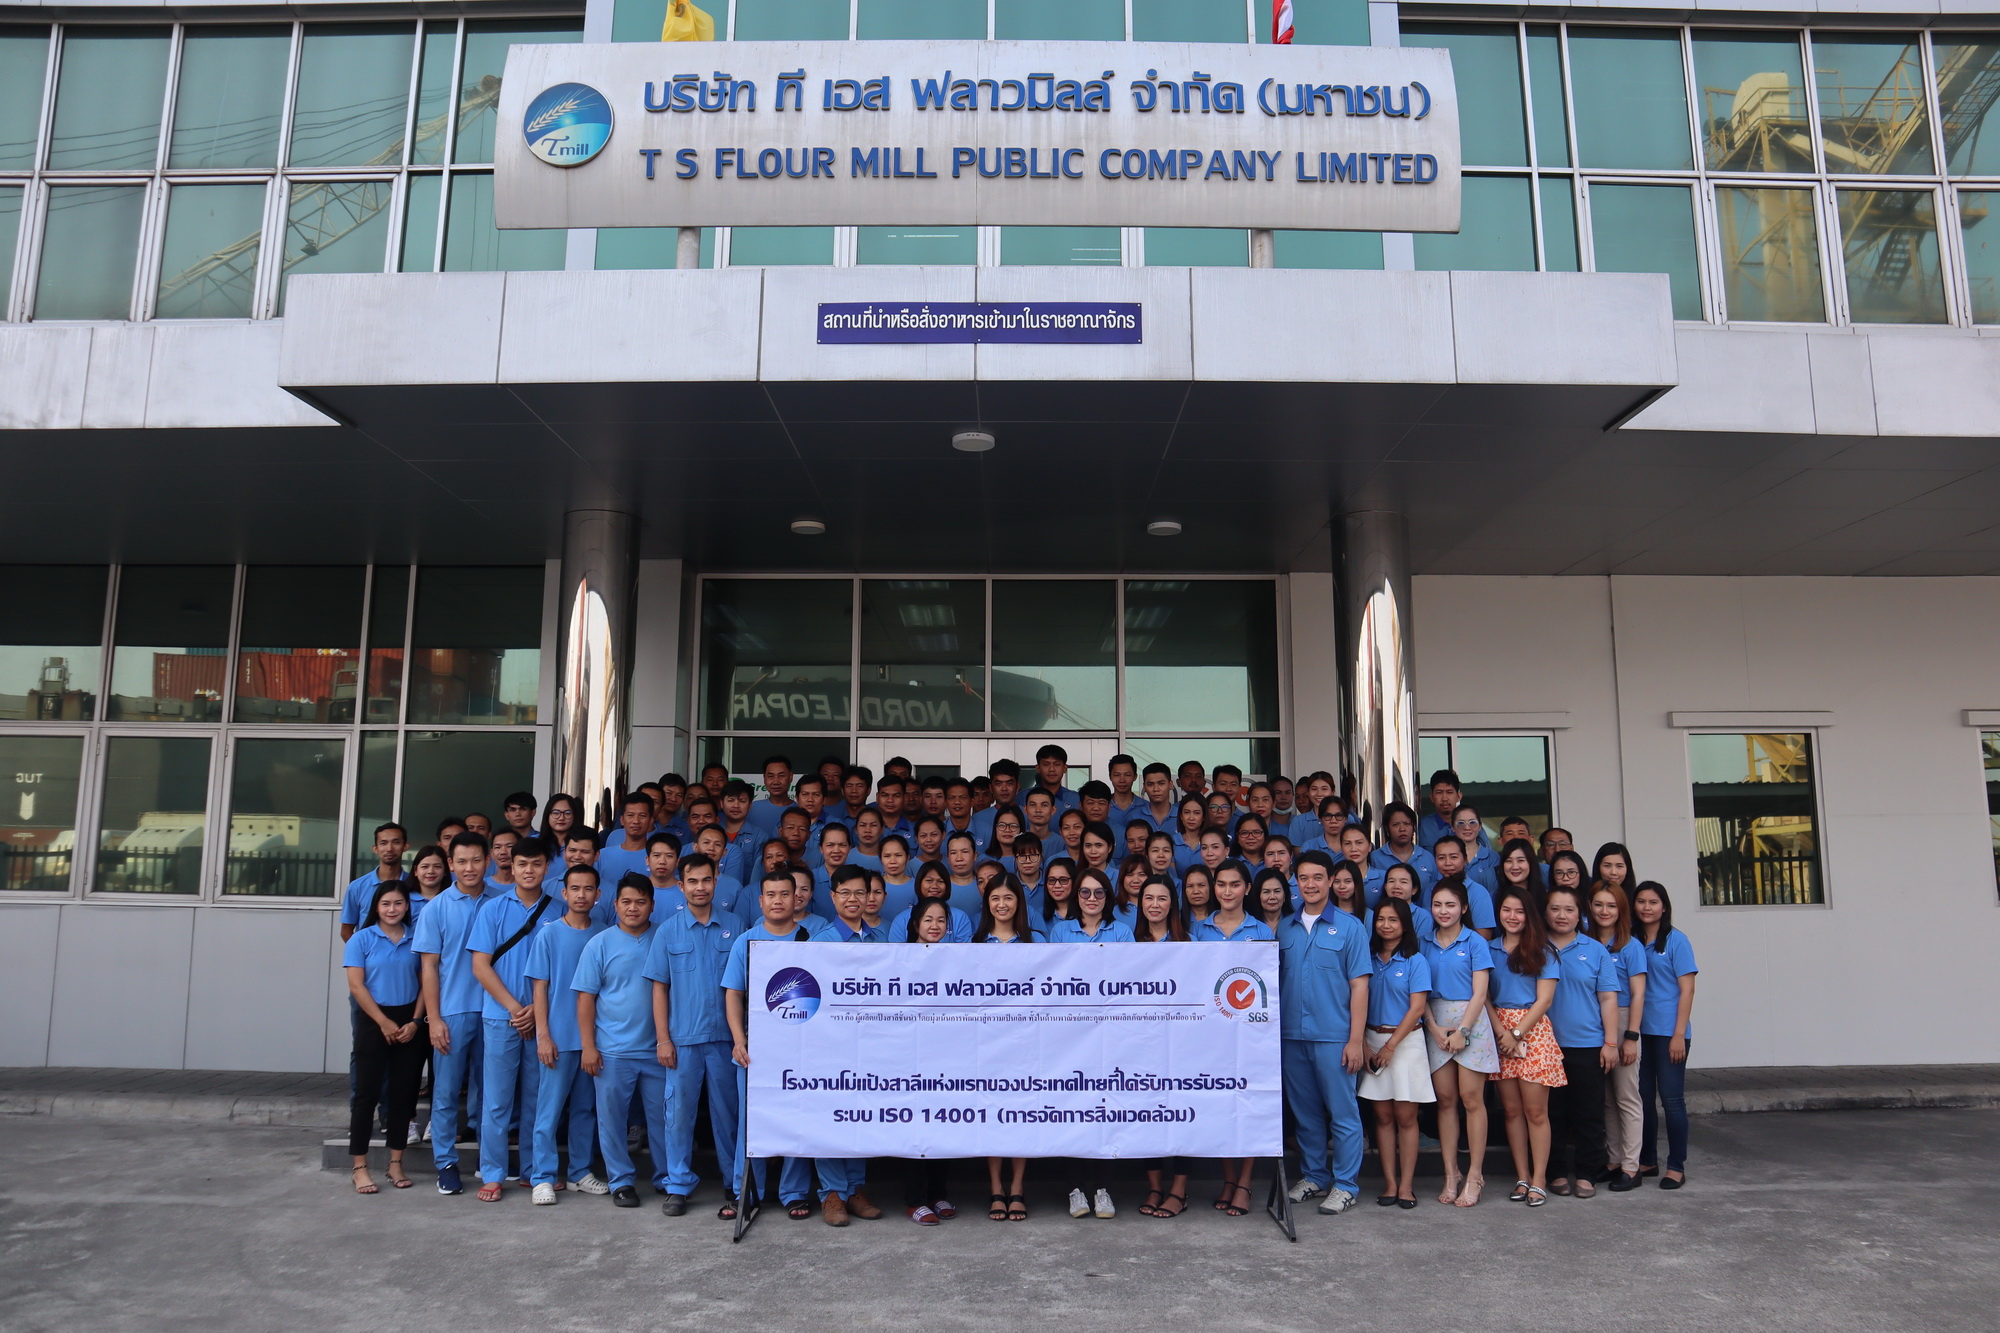 TMILL ปลื้มเป็นโรงงานโม่แป้งสาลีแห่งแรกของประเทศไทย ที่ได้รับการรับรอง ระบบ ISO14001:2015 ด้านการจัดการสิ่งแวดล้อม